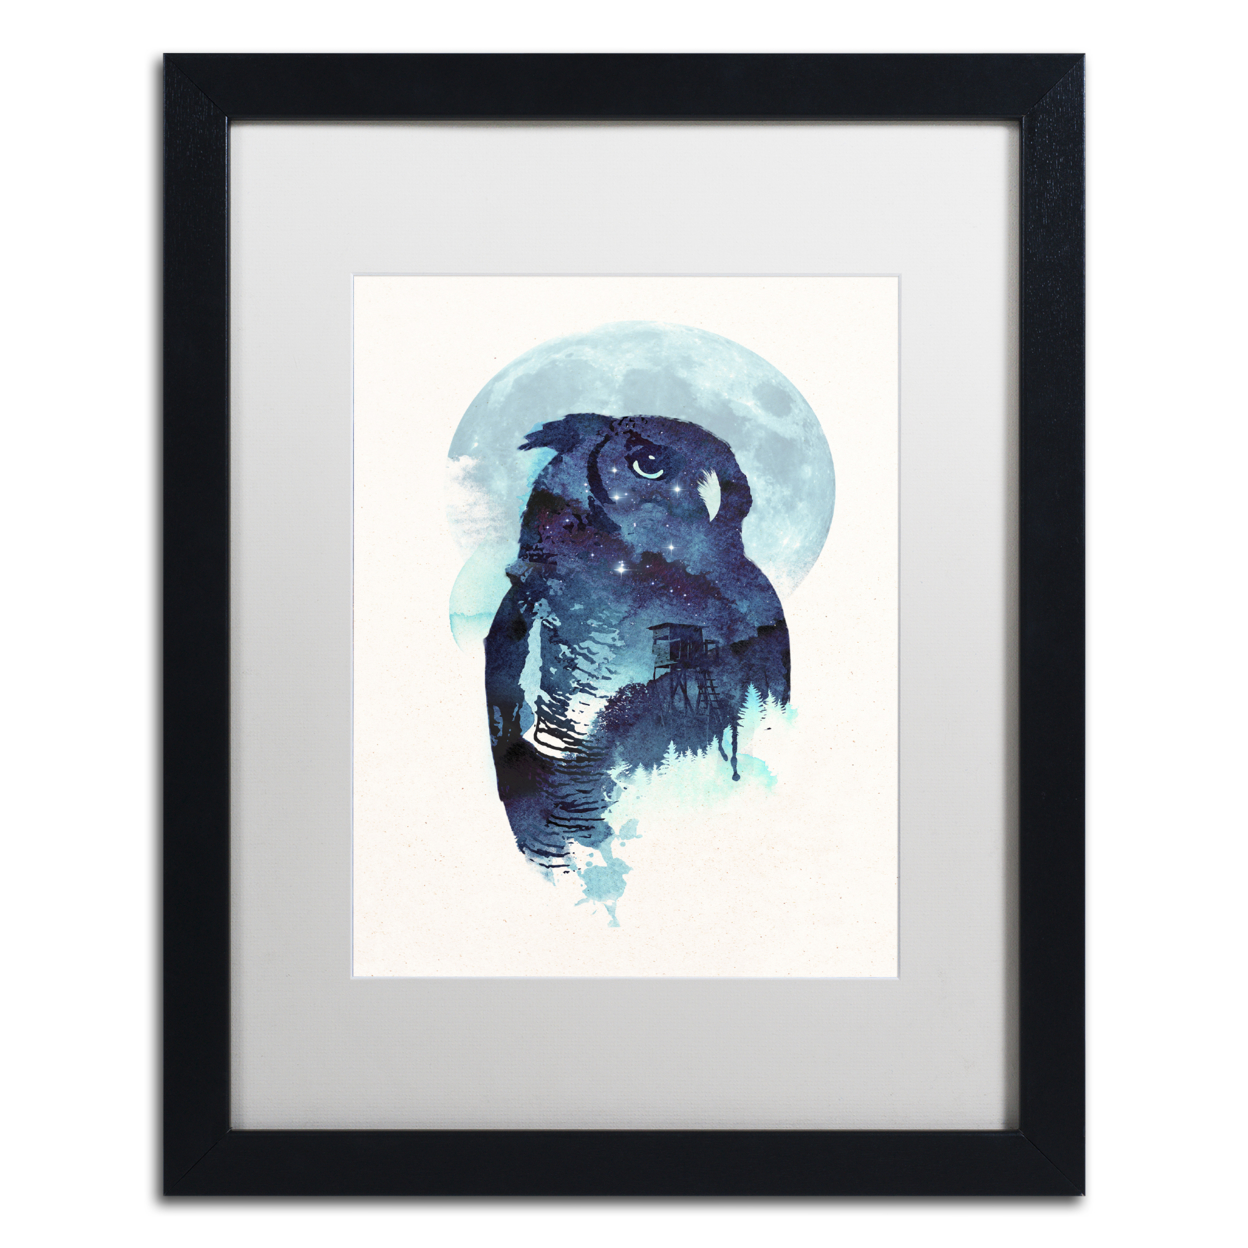 Robert Farkas 'Midnight Owl' Black Wooden Framed Art 18 X 22 Inches